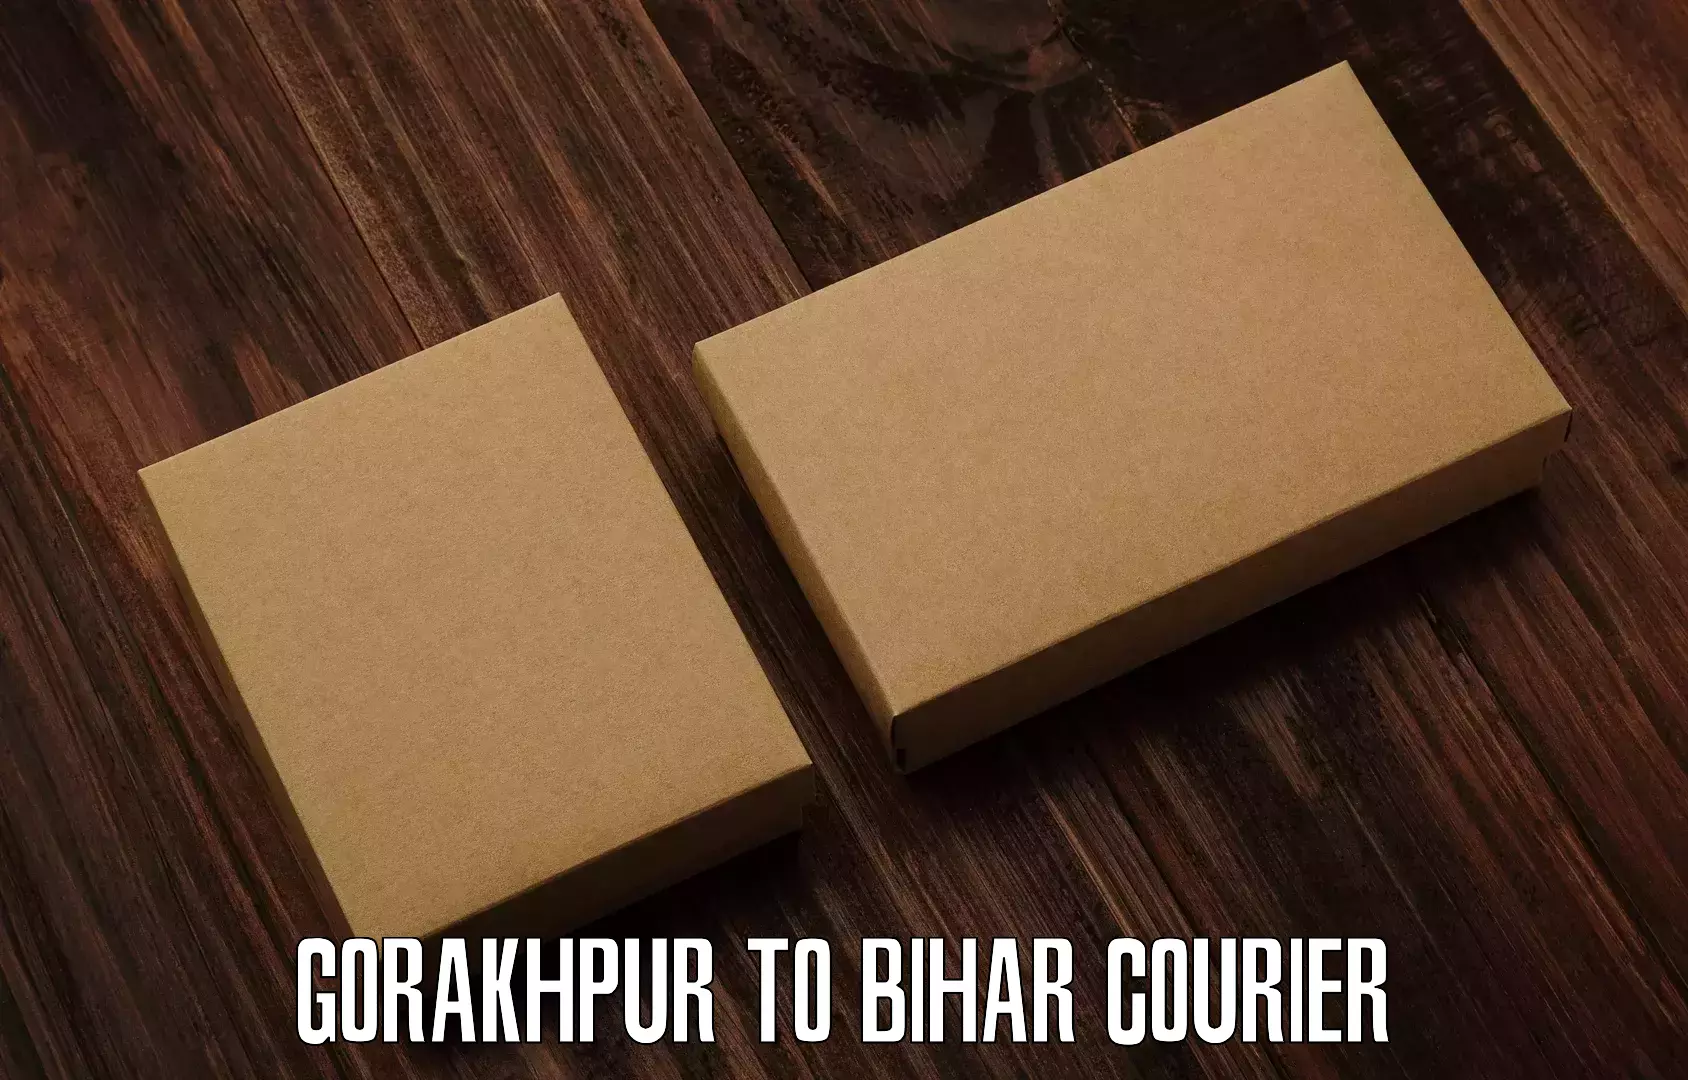 Same day shipping Gorakhpur to Barauni